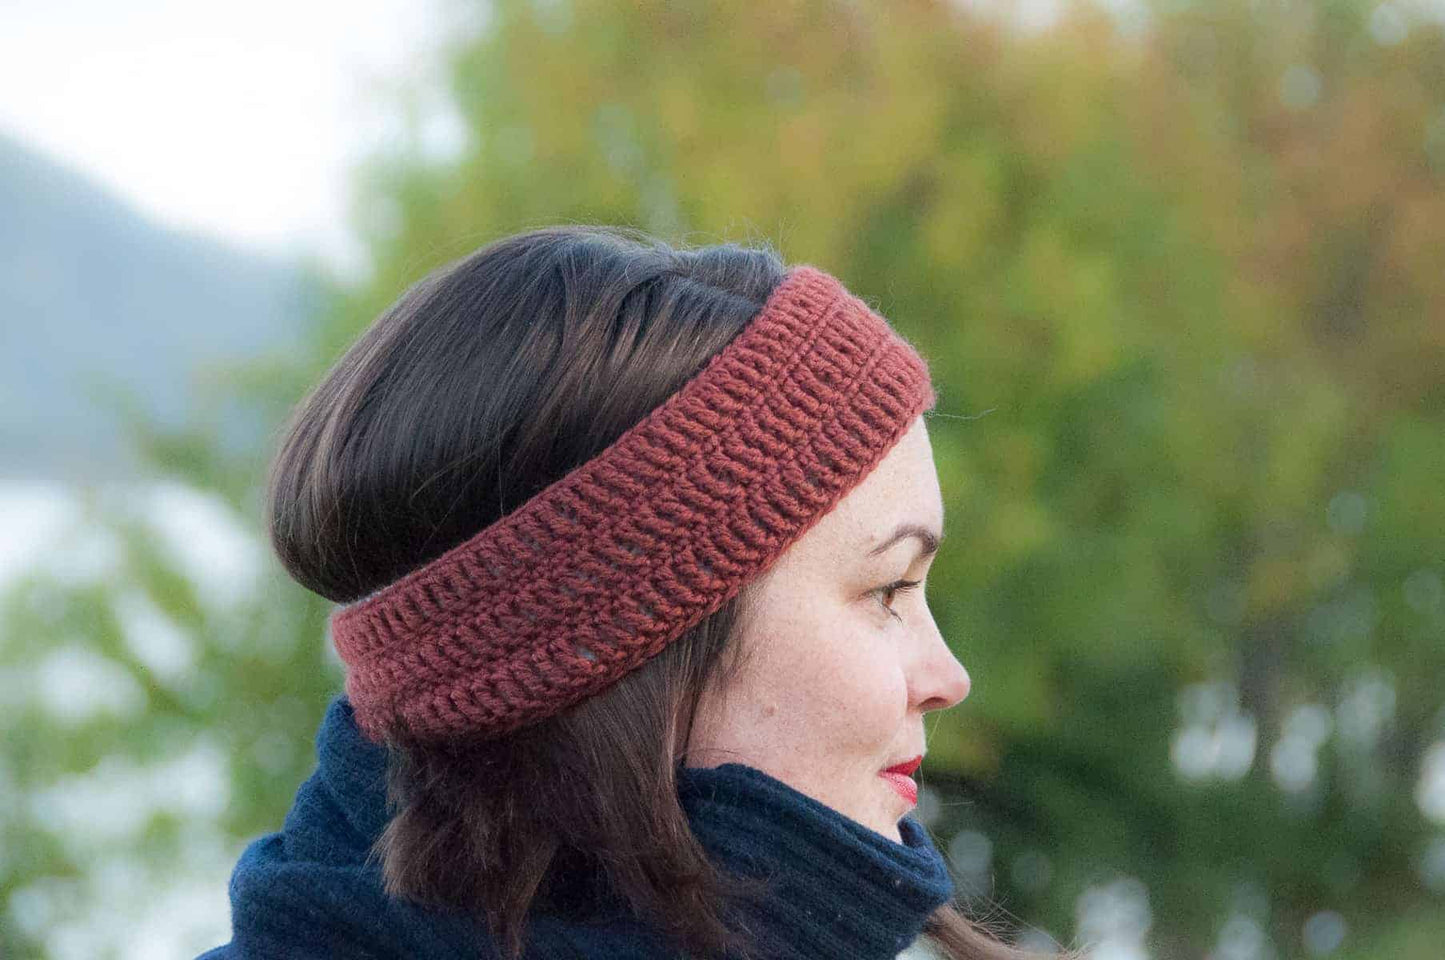 crochet bruma headband, free crochet pattern, rust colored headband modeled, easy crochet pattern